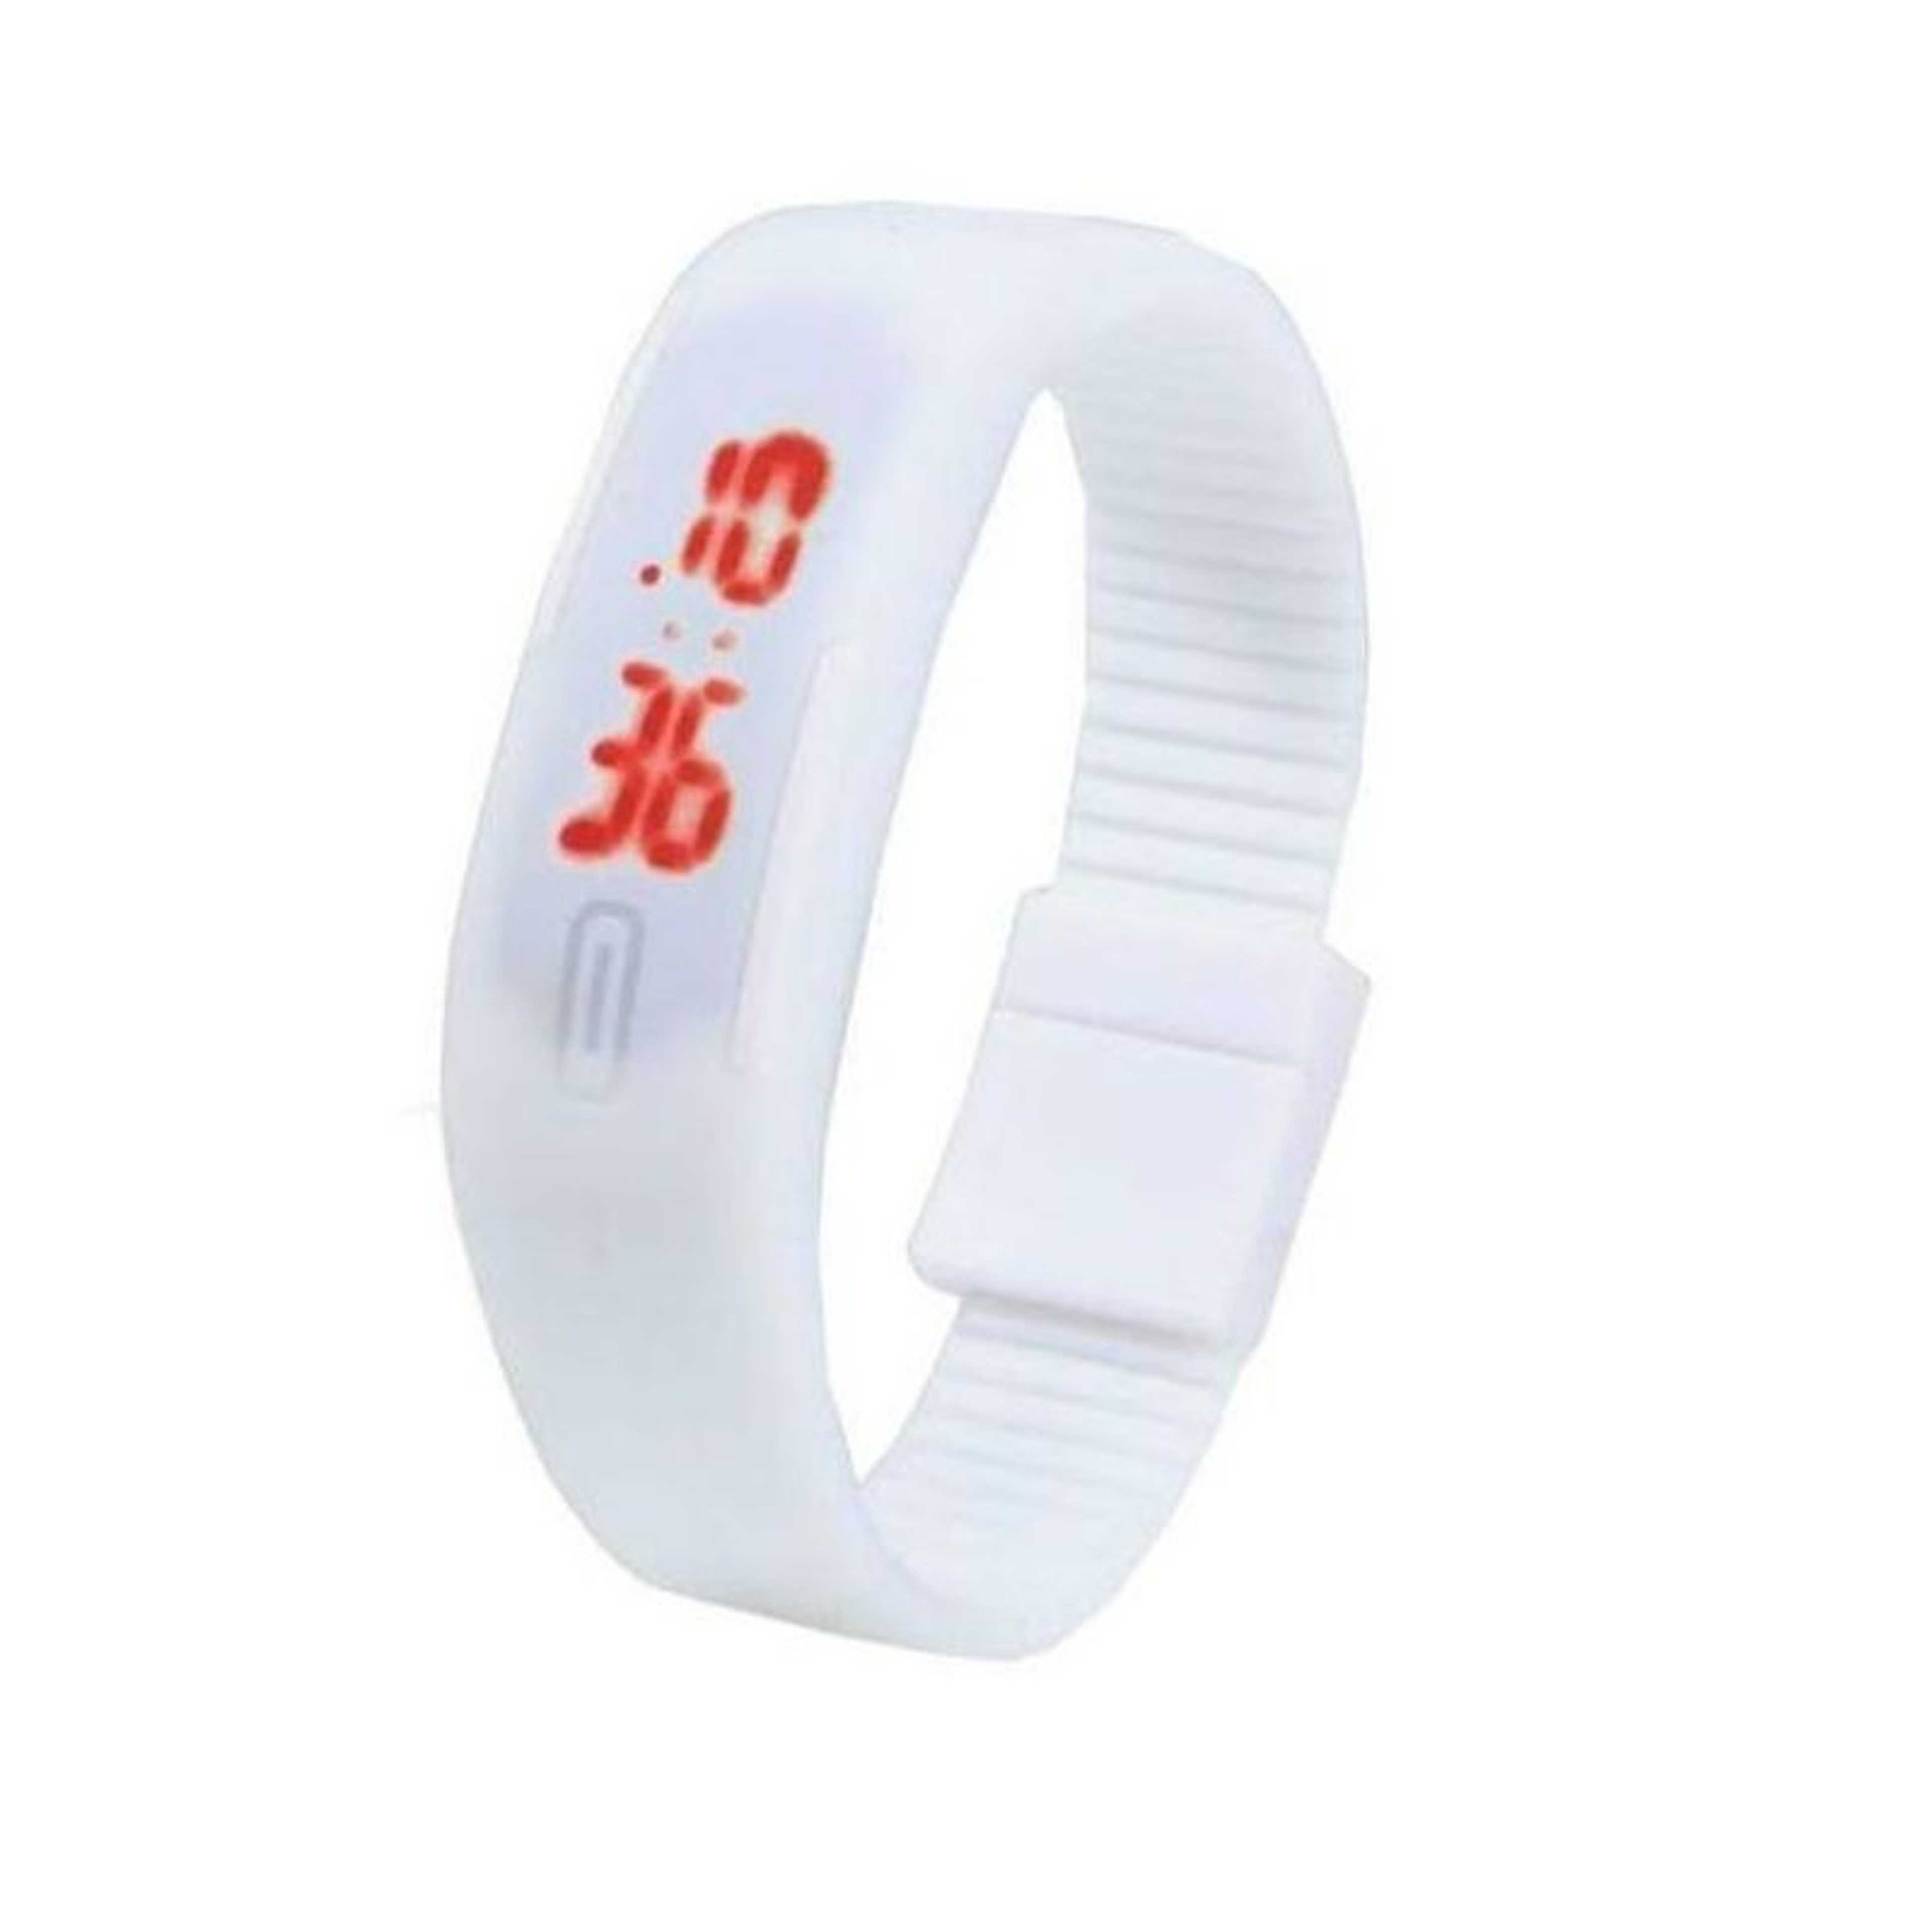 Techmanistan LED Bracelet Watch - White, Unisex Bracelet Watch LED Rubber Digital Date Sport Wristwatch for Men Women Boy Girl